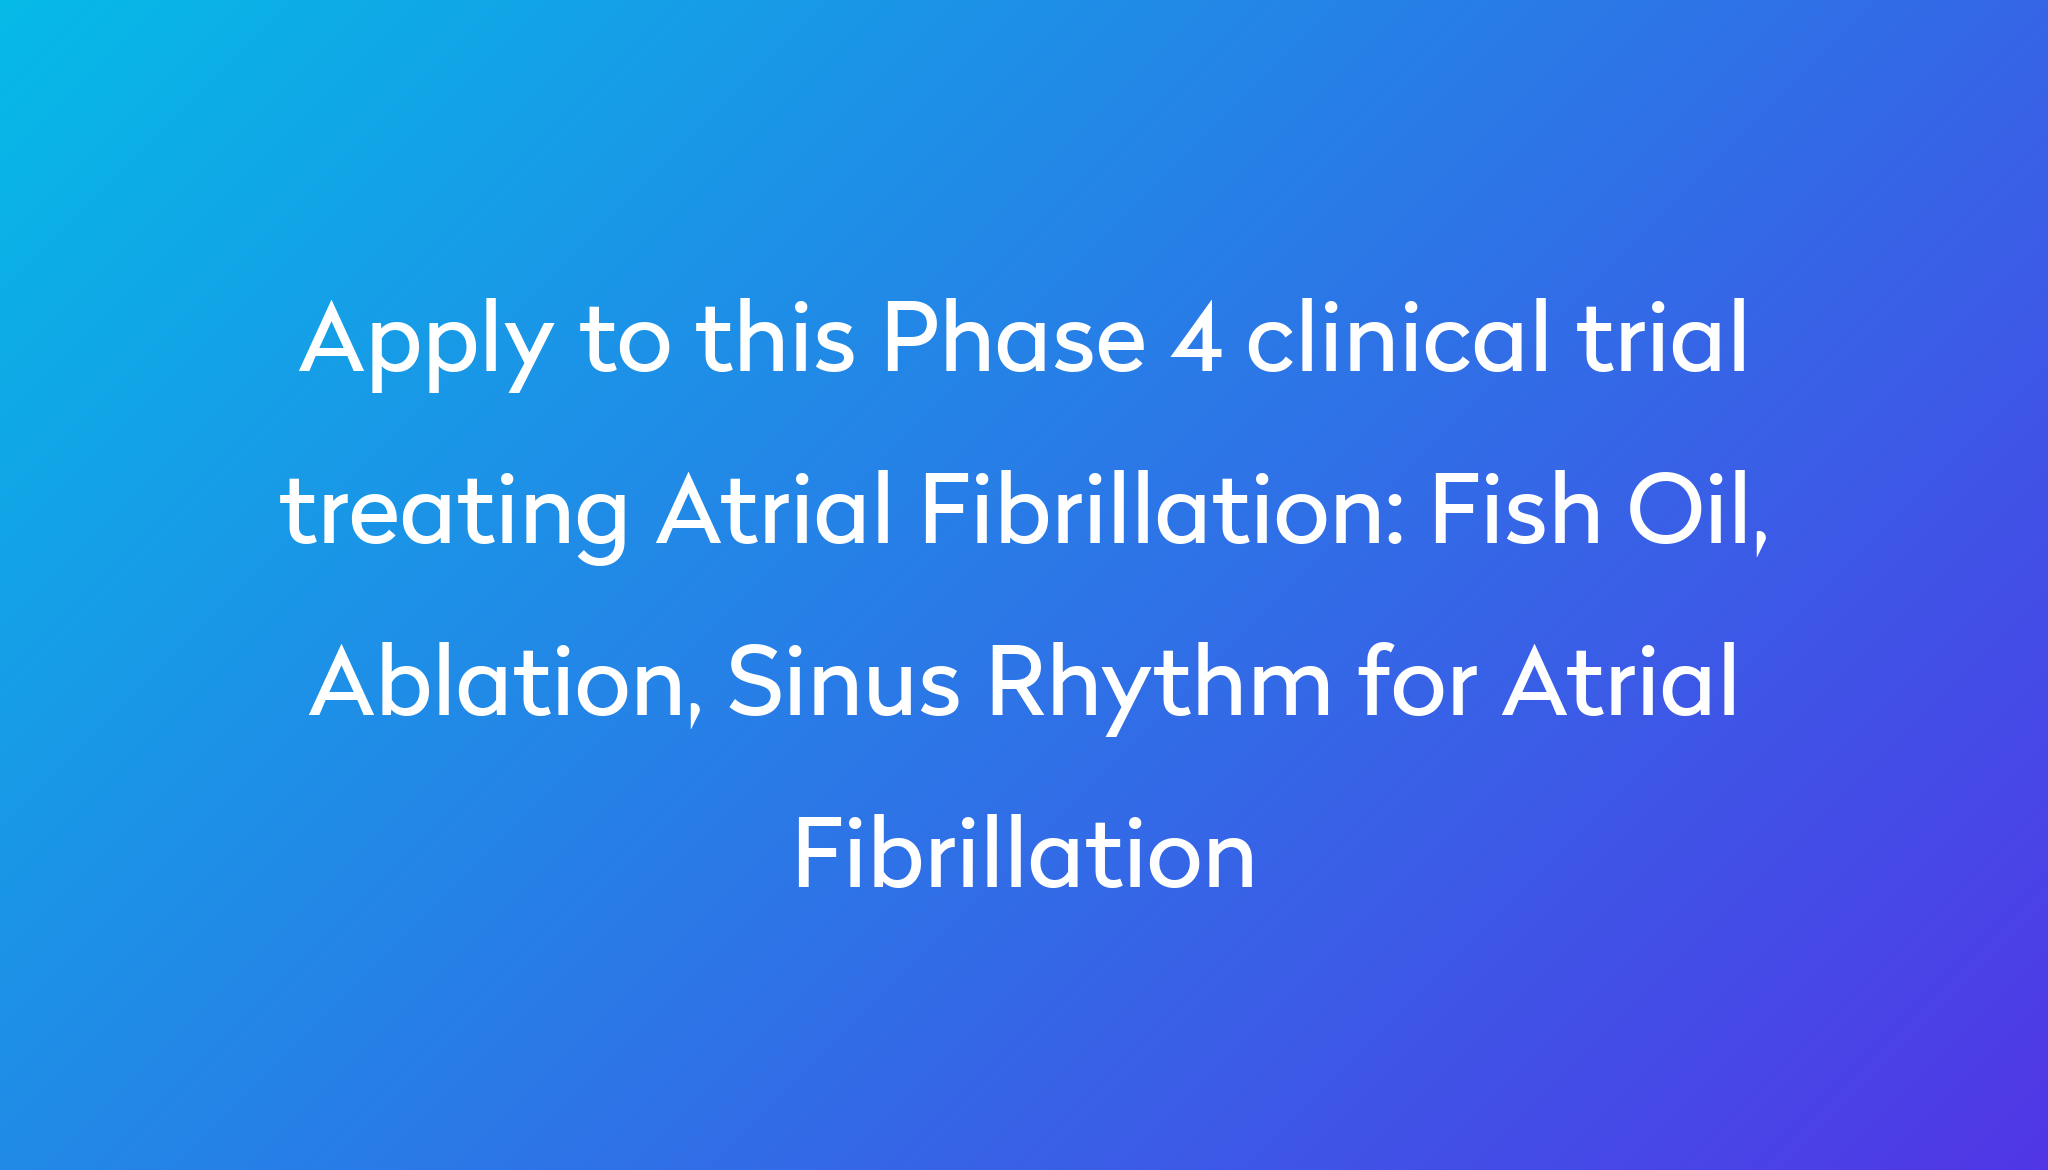 Fish Oil, Ablation, Sinus Rhythm for Atrial Fibrillation Clinical Trial